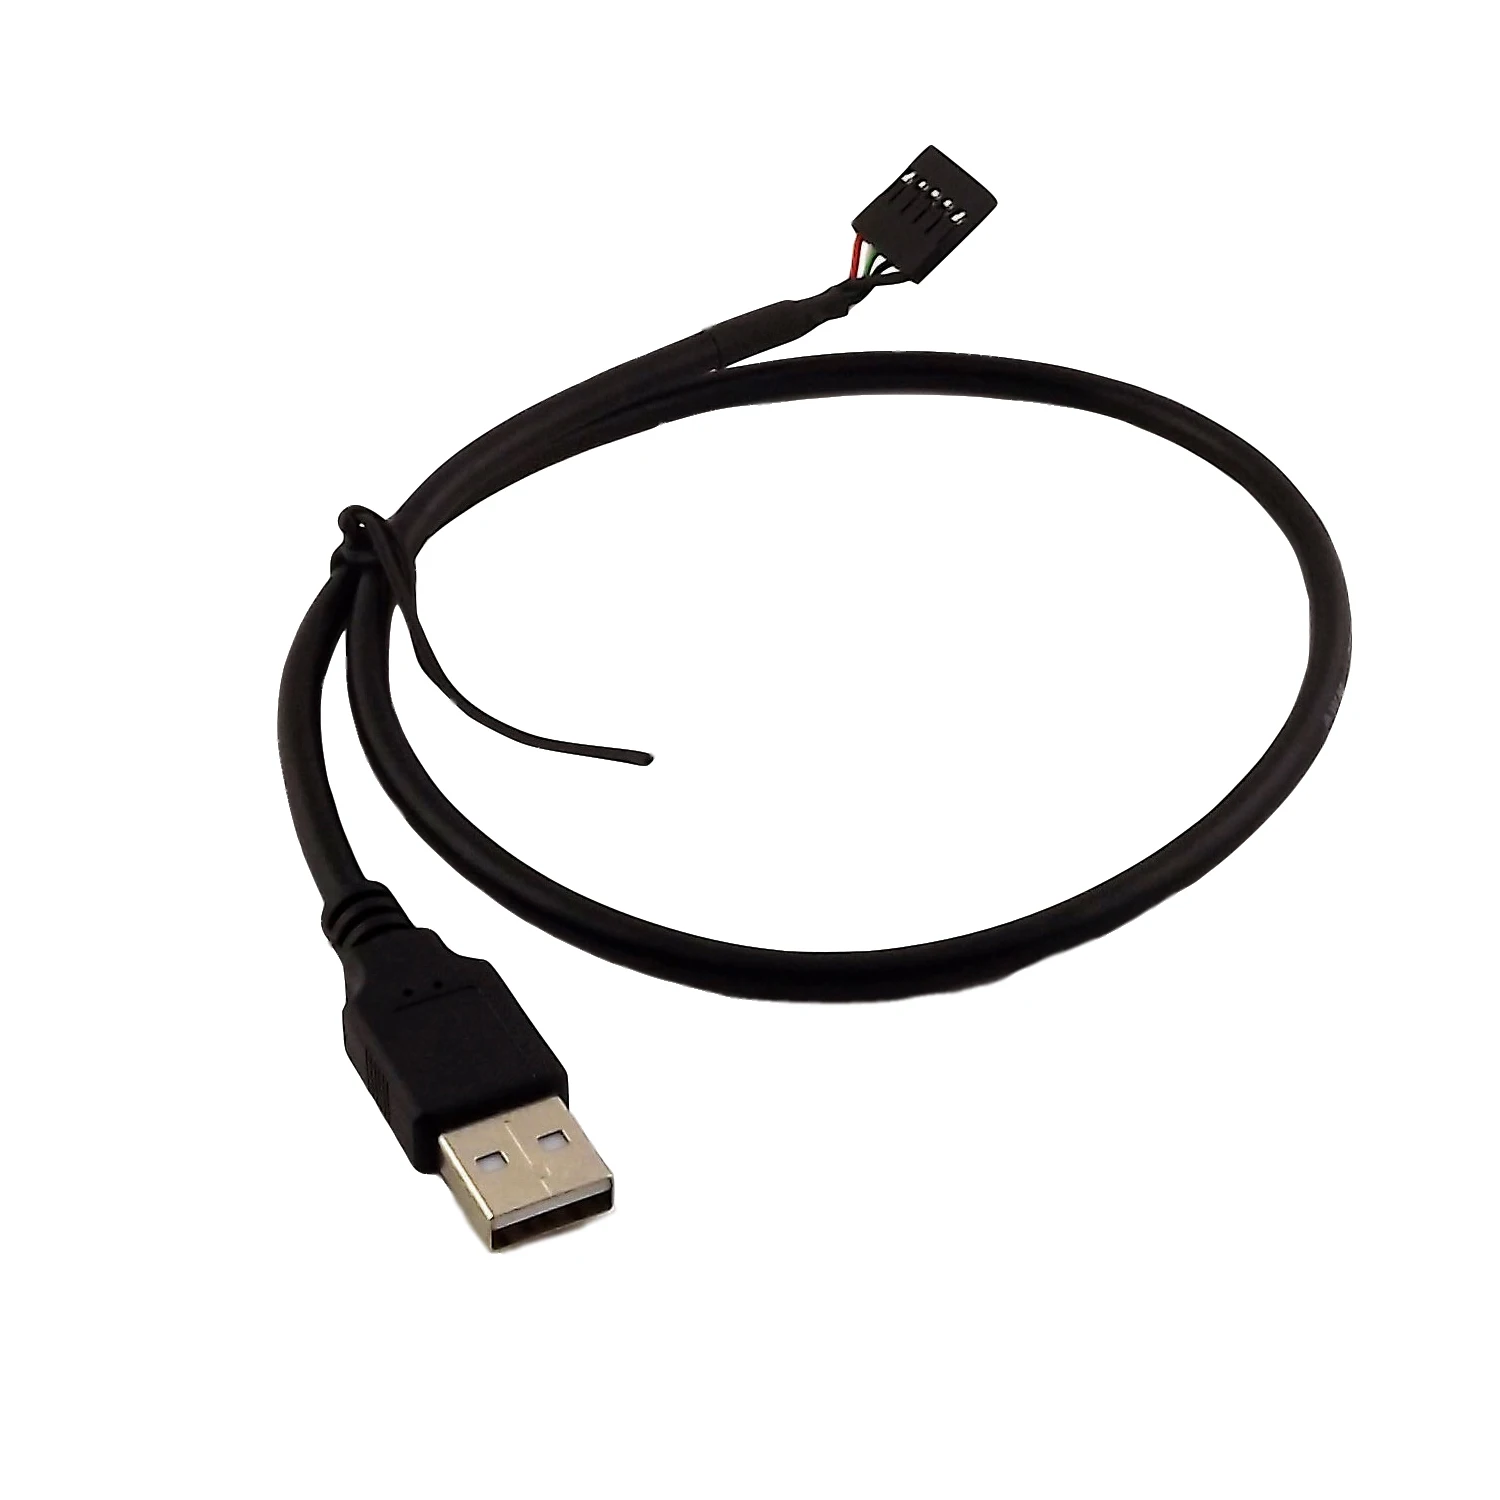 

Кабель USB 2.0 Type A (штекер)-5-контактный разъем Dupont (гнездо), адаптер материнской платы, черный, 1 шт., 50 см